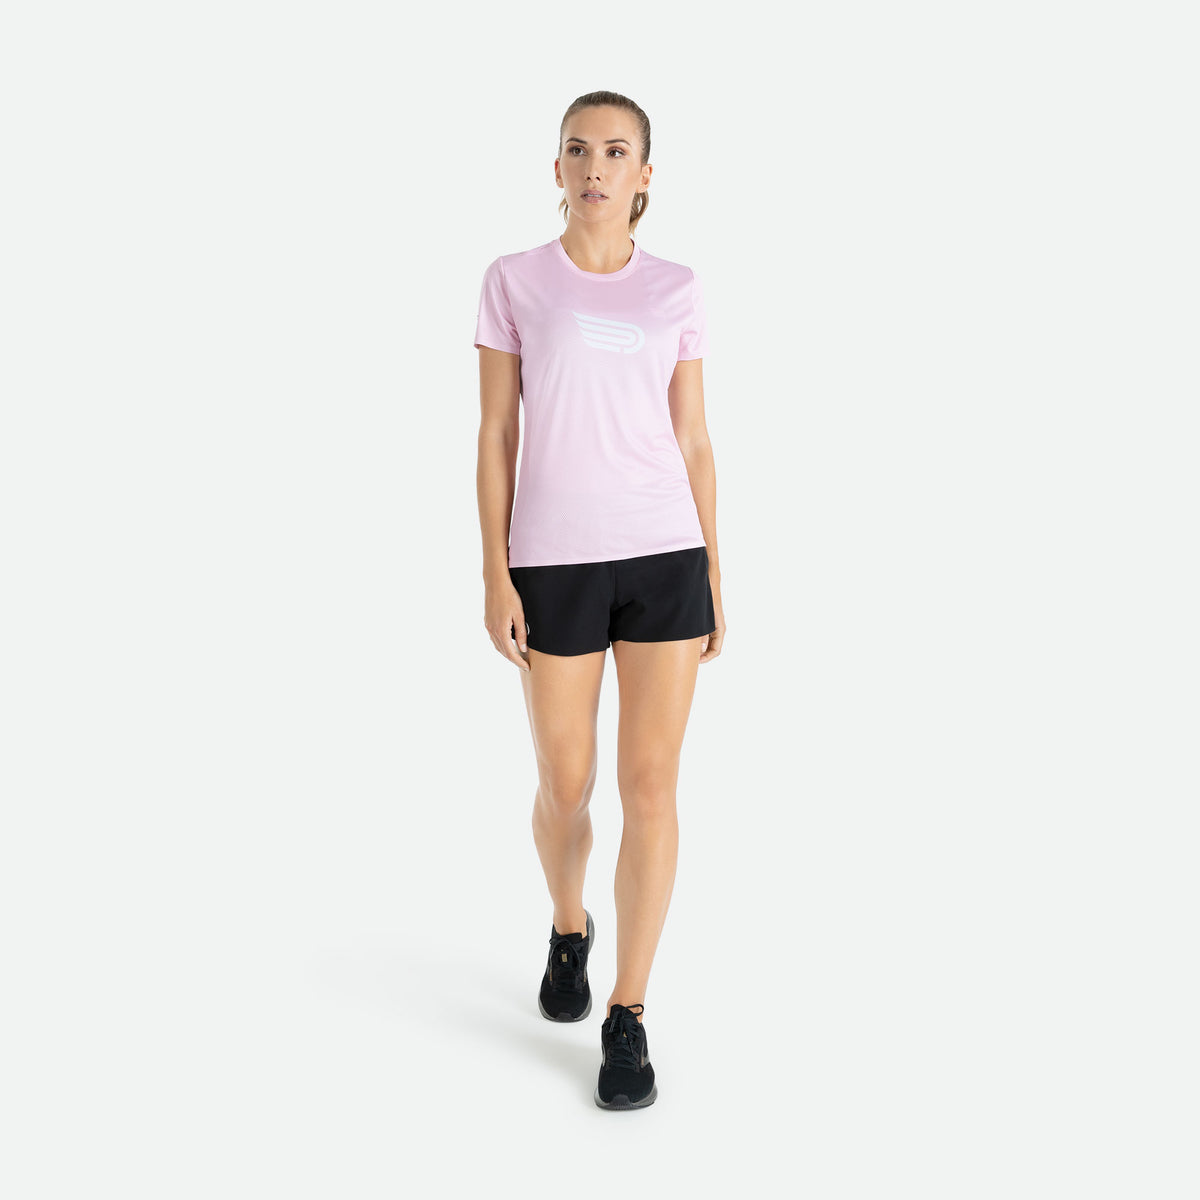 PRESSIO Ārahi Kortermet T-skjorte - Lys rosa